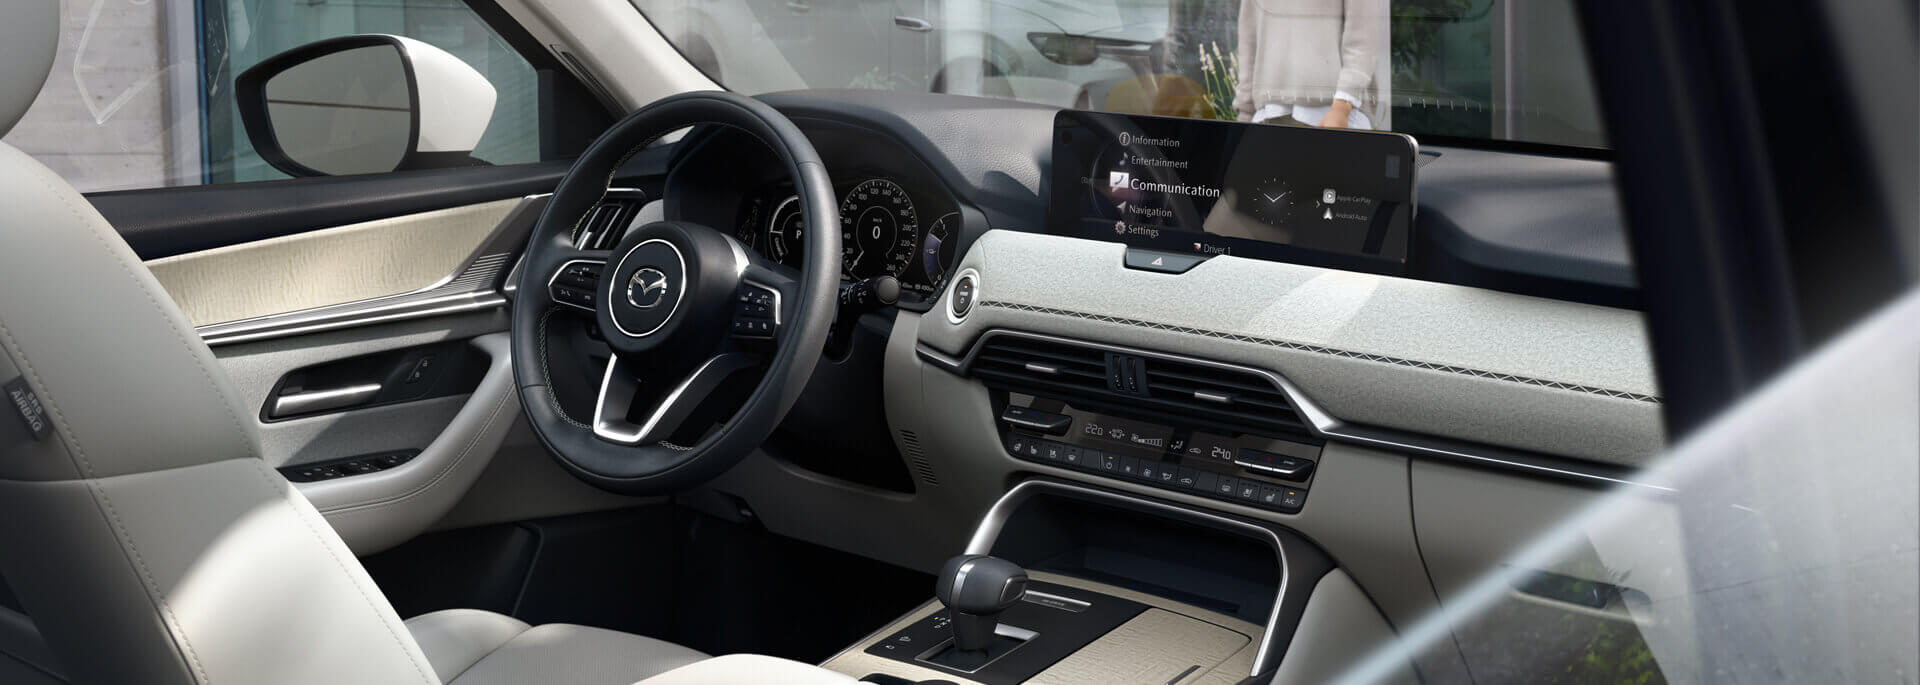 Prostorný interiér zcela nového plug-in hybridního SUV Mazda CX-60 vyznačující se japonským řemeslným zpracováním.